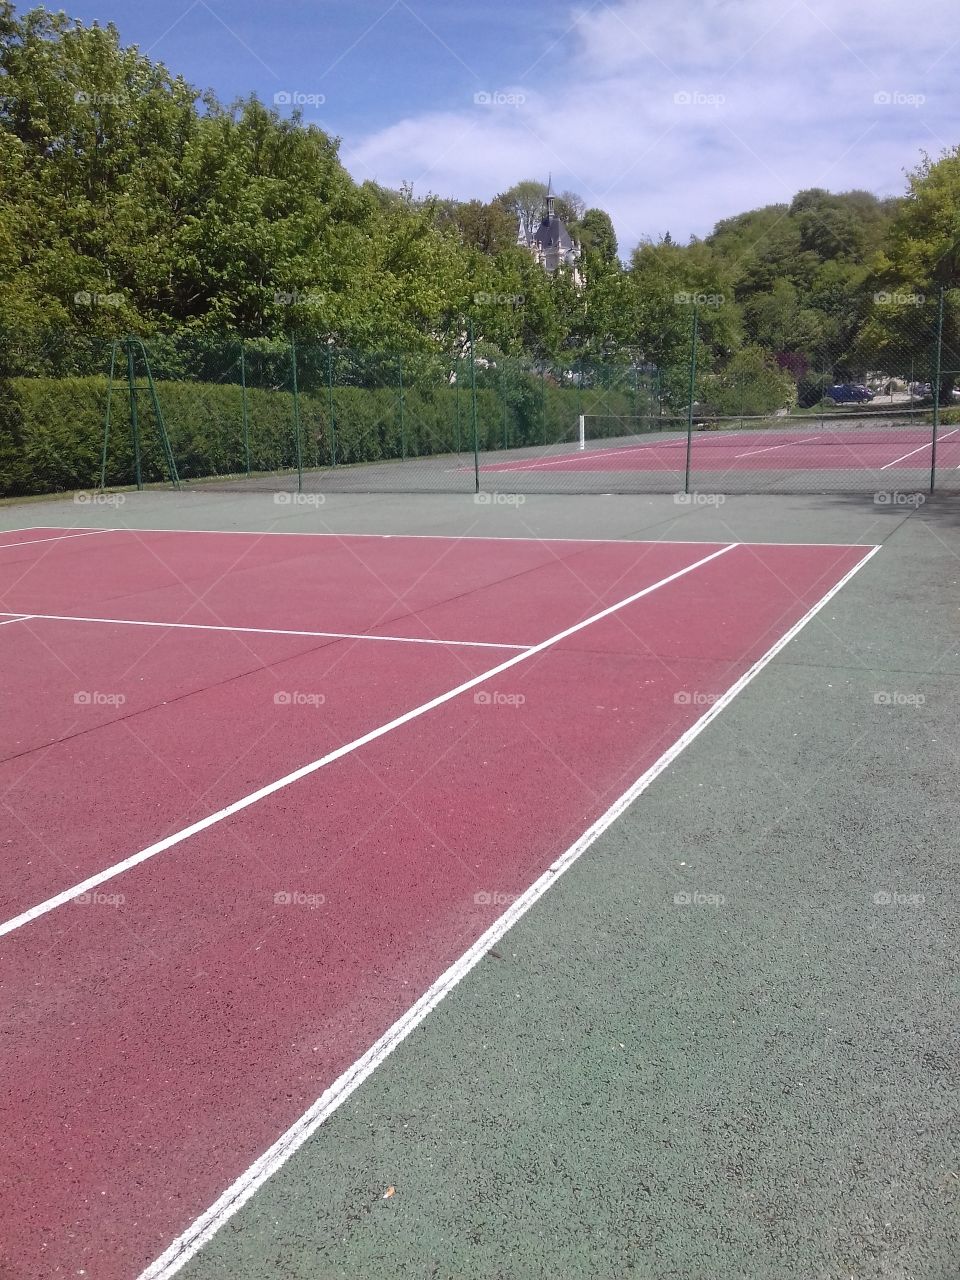 tennis court under the sun